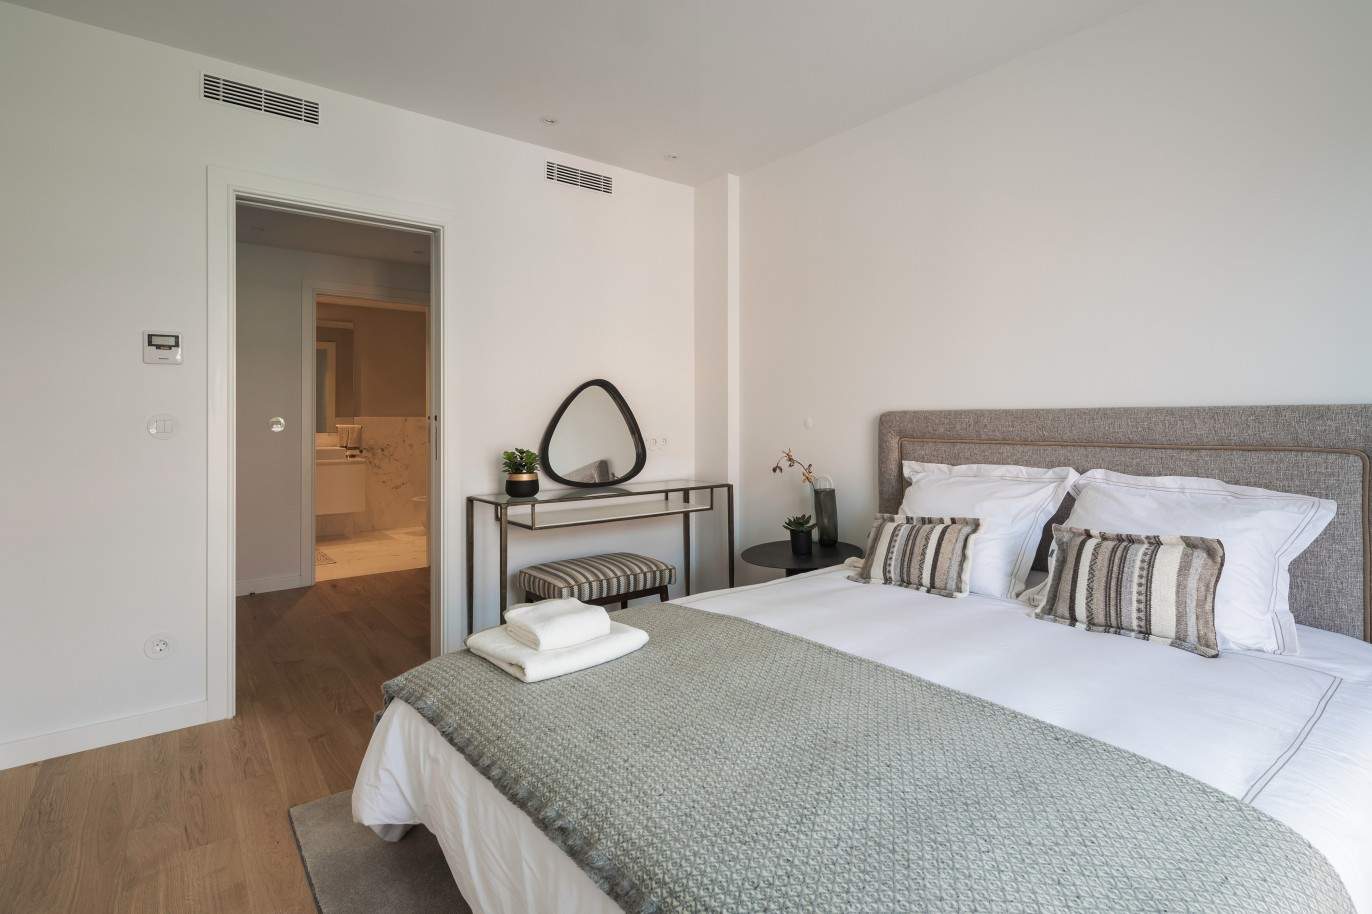 Penthouse nueva de 3 dormitorios con piscina y vistas del Palacio de Cristal, Oporto, Portugal_211785